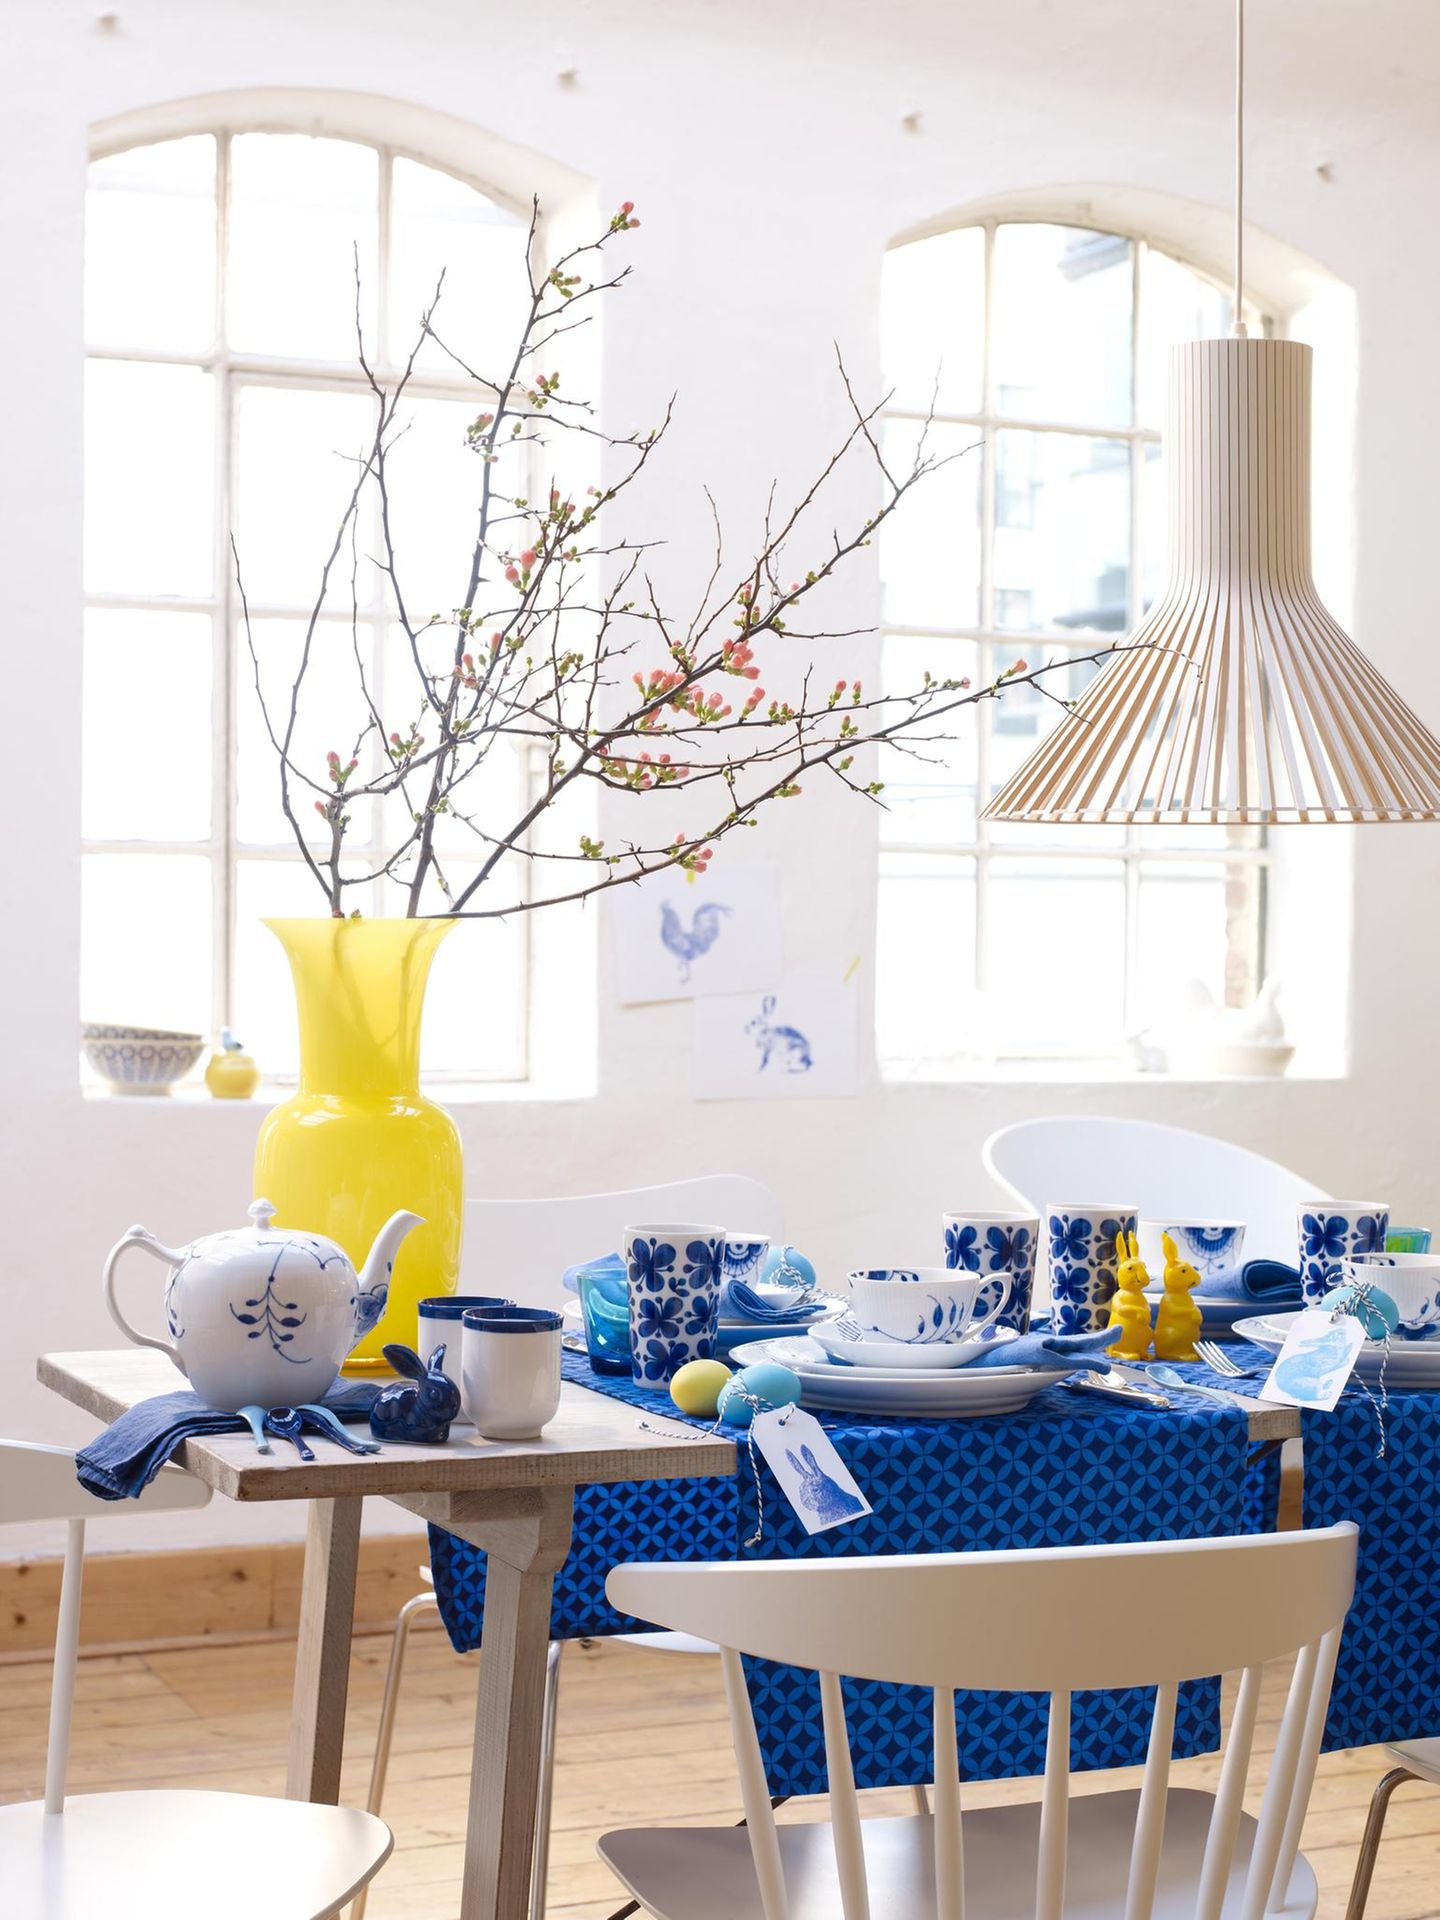 Tischdeko für Ostern in Blau, Weiß und Gelb